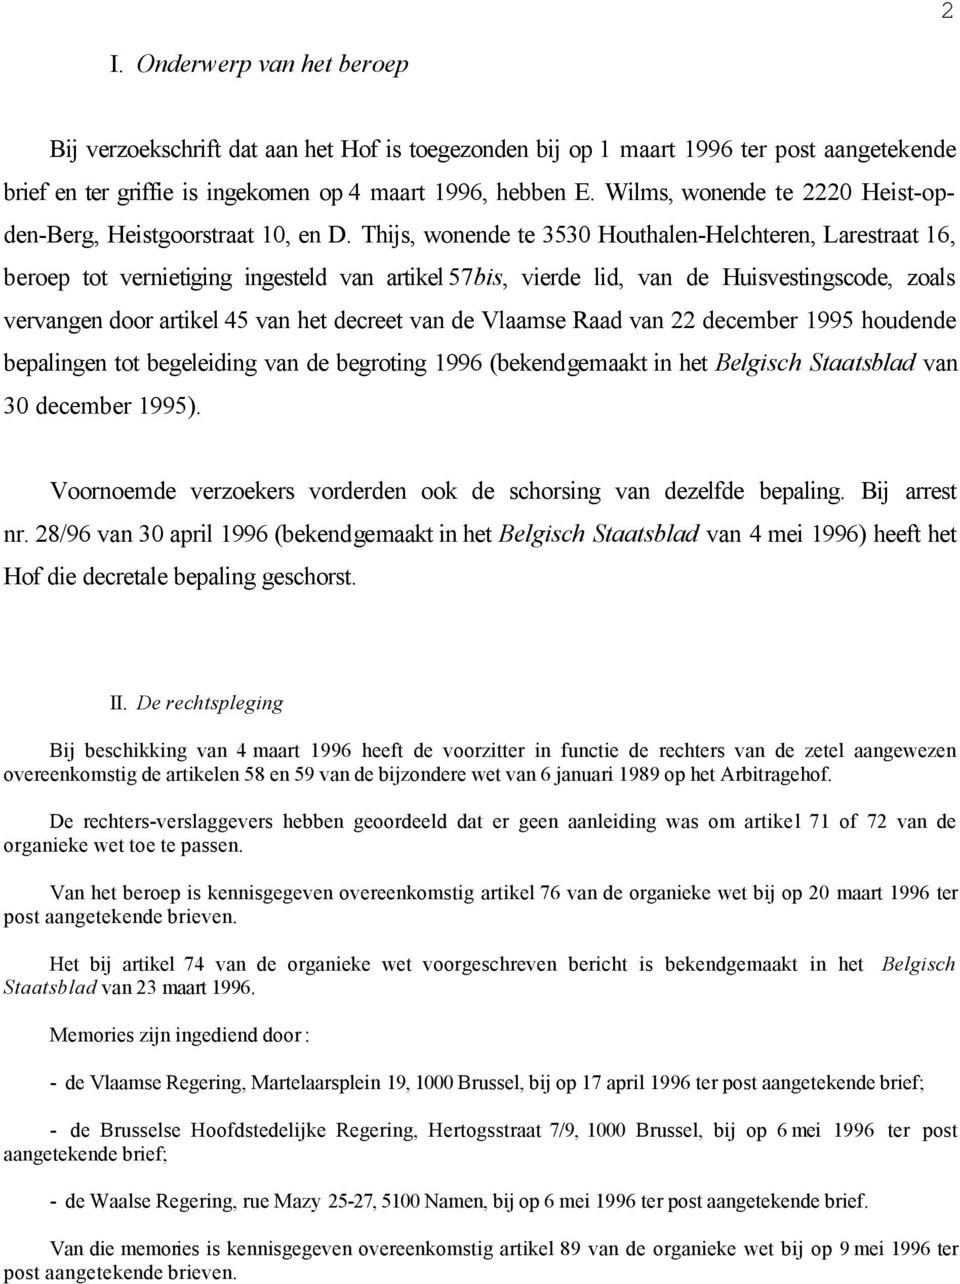 Thijs, wonende te 3530 Houthalen-Helchteren, Larestraat 16, beroep tot vernietiging ingesteld van artikel 57bis, vierde lid, van de Huisvestingscode, zoals vervangen door artikel 45 van het decreet